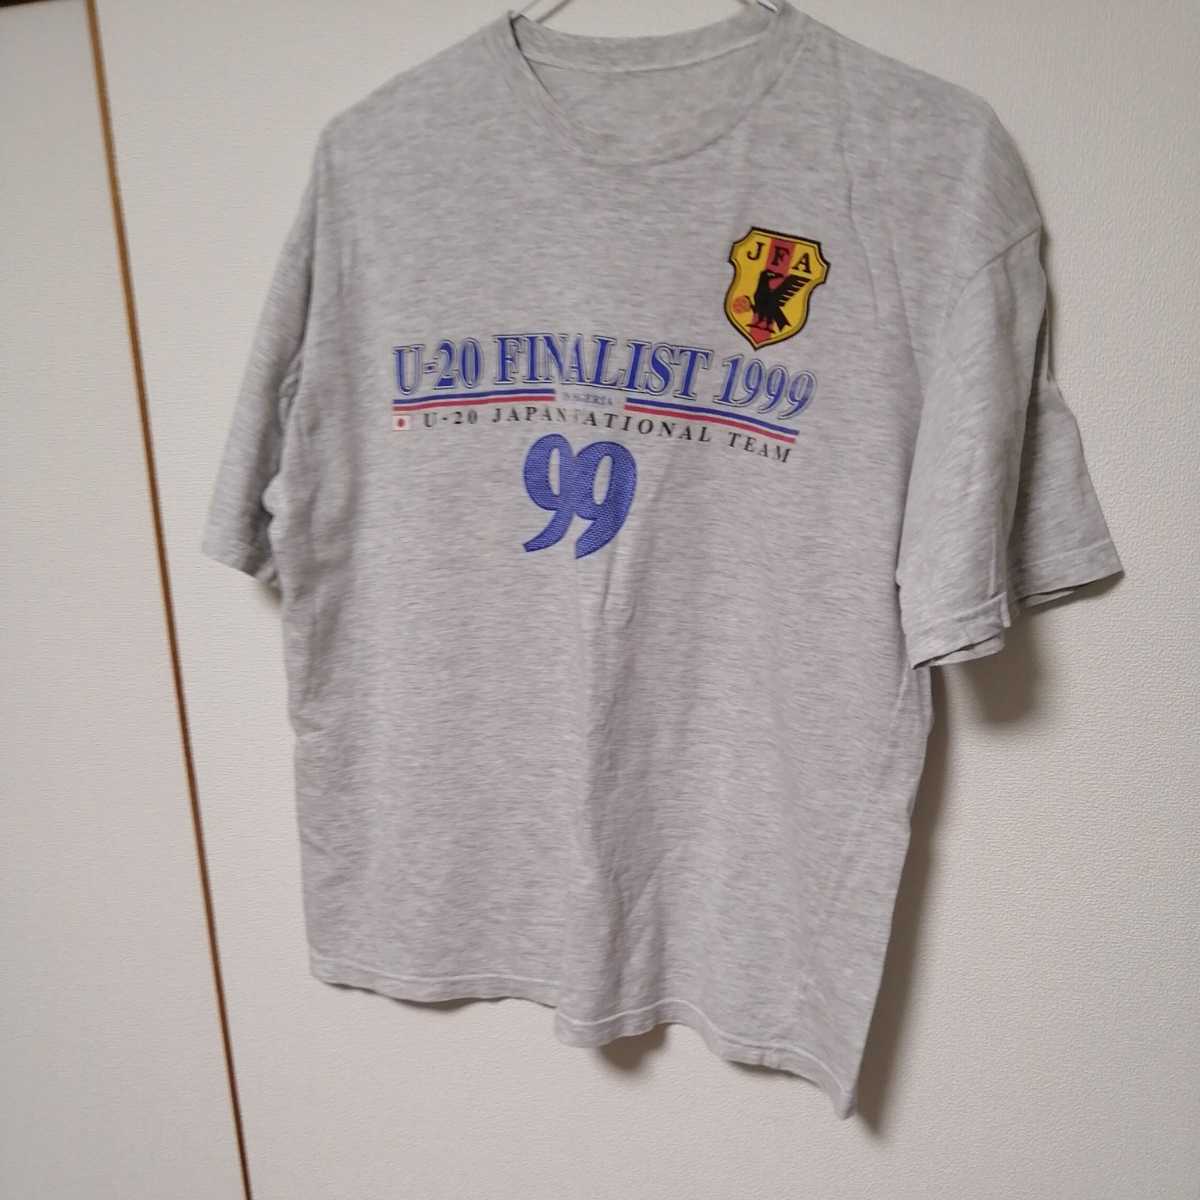 Tシャツ 1999年 U－20ファイナリスト。遠藤、小野、永井、中田、JFA公認Tシャツ。サイズXL.着用しましたしつかりしてます。配送料無料です